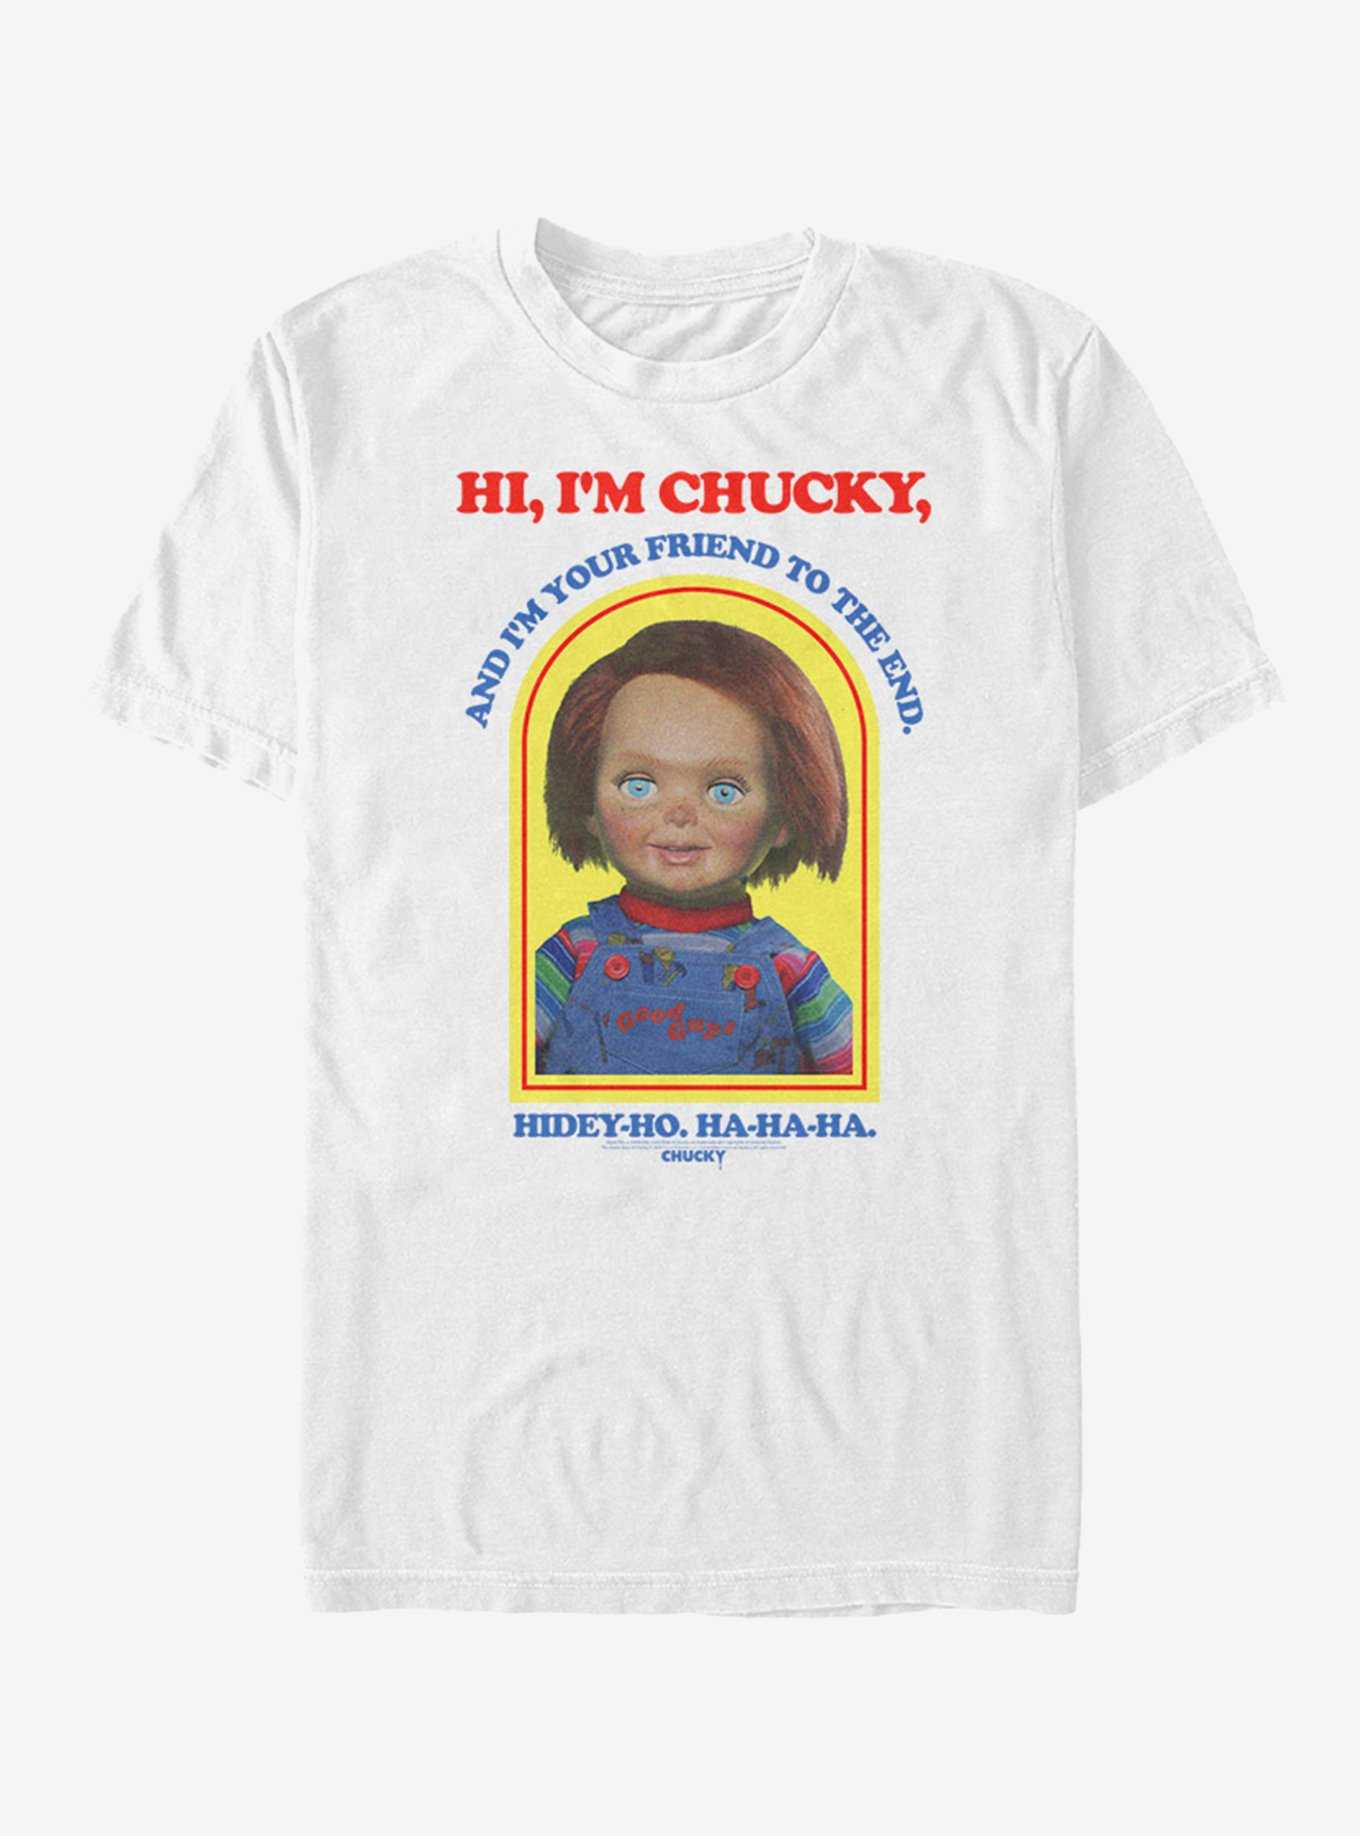 Chucky Hi I'm Chucky T-Shirt, , hi-res